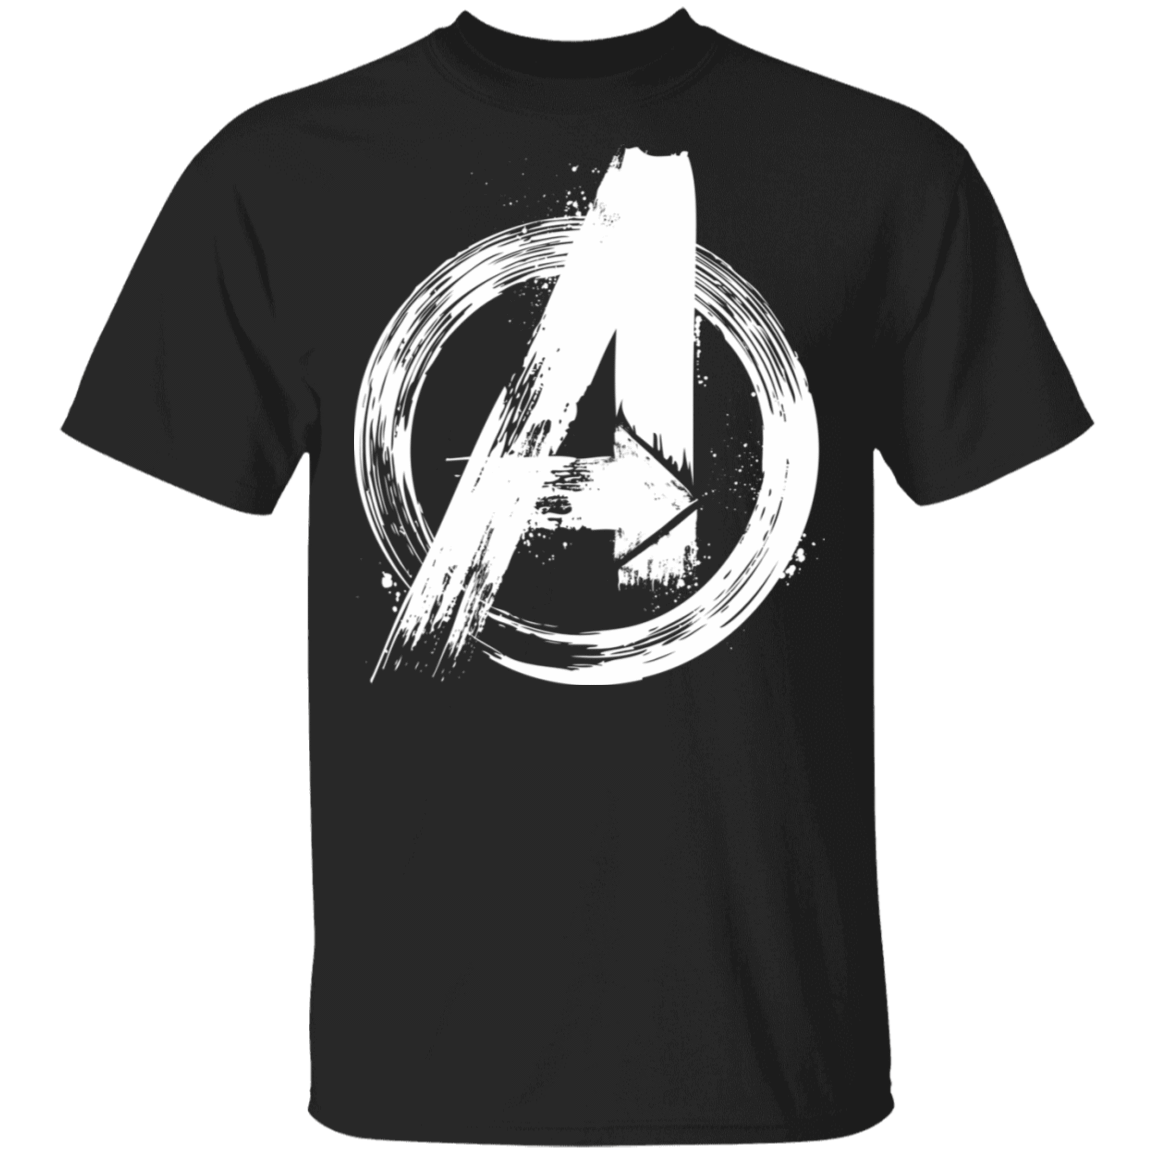 T-Shirts Black / S I Am An Avenger T-Shirt